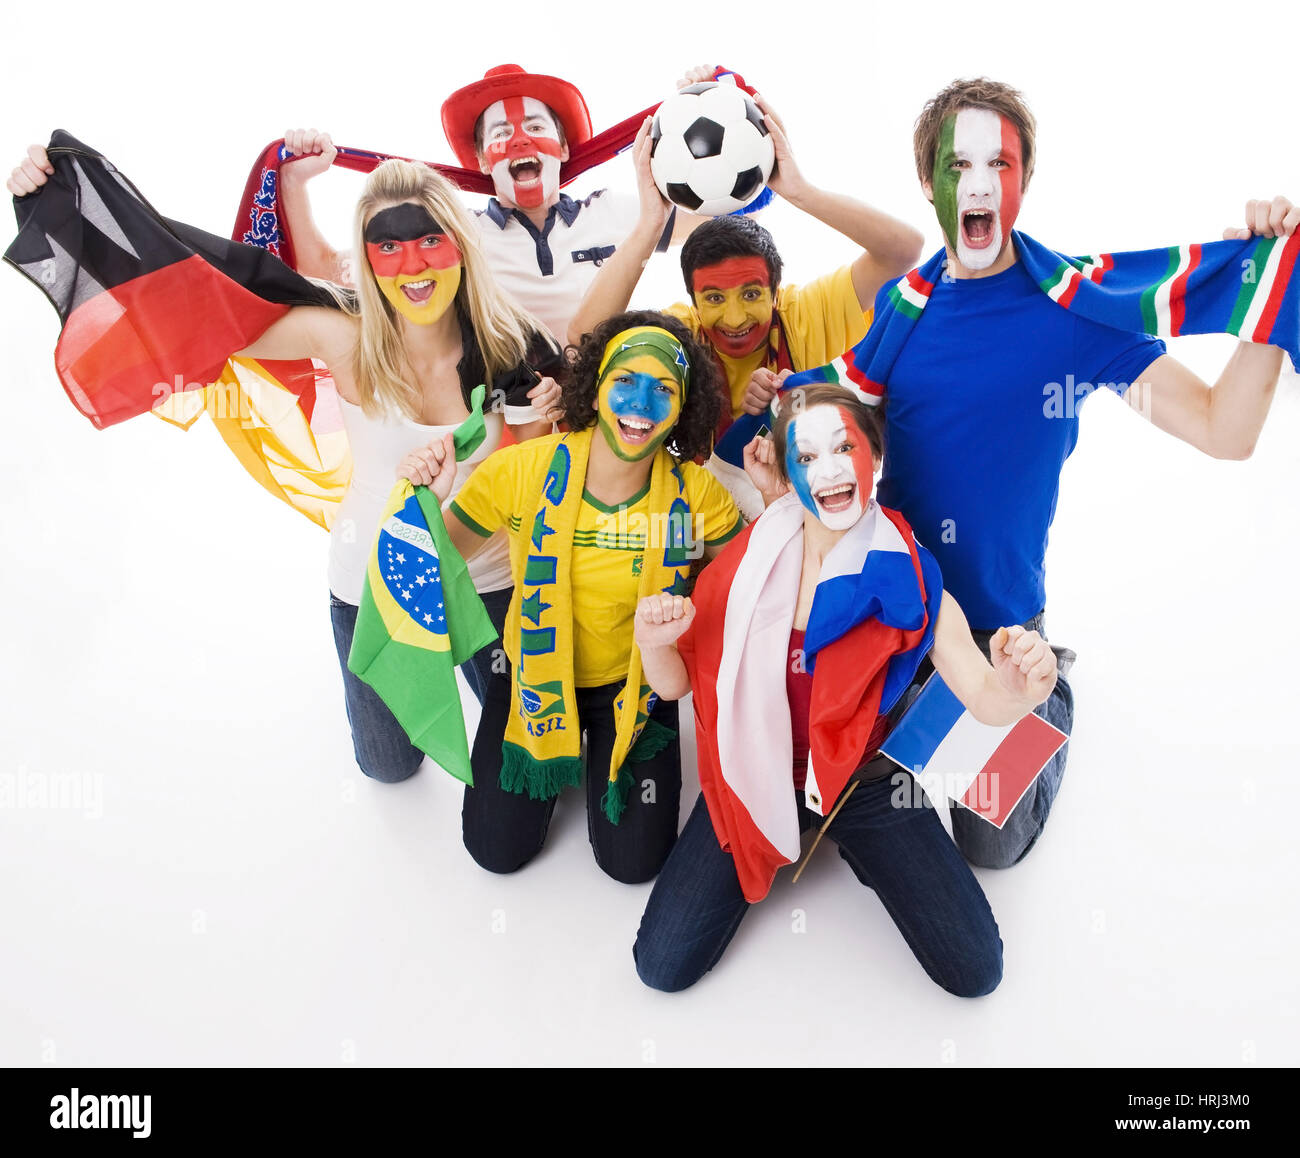 Football fans from all over the world, Fussballfans aus aller Welt zeigen Emotionen Stock Photo